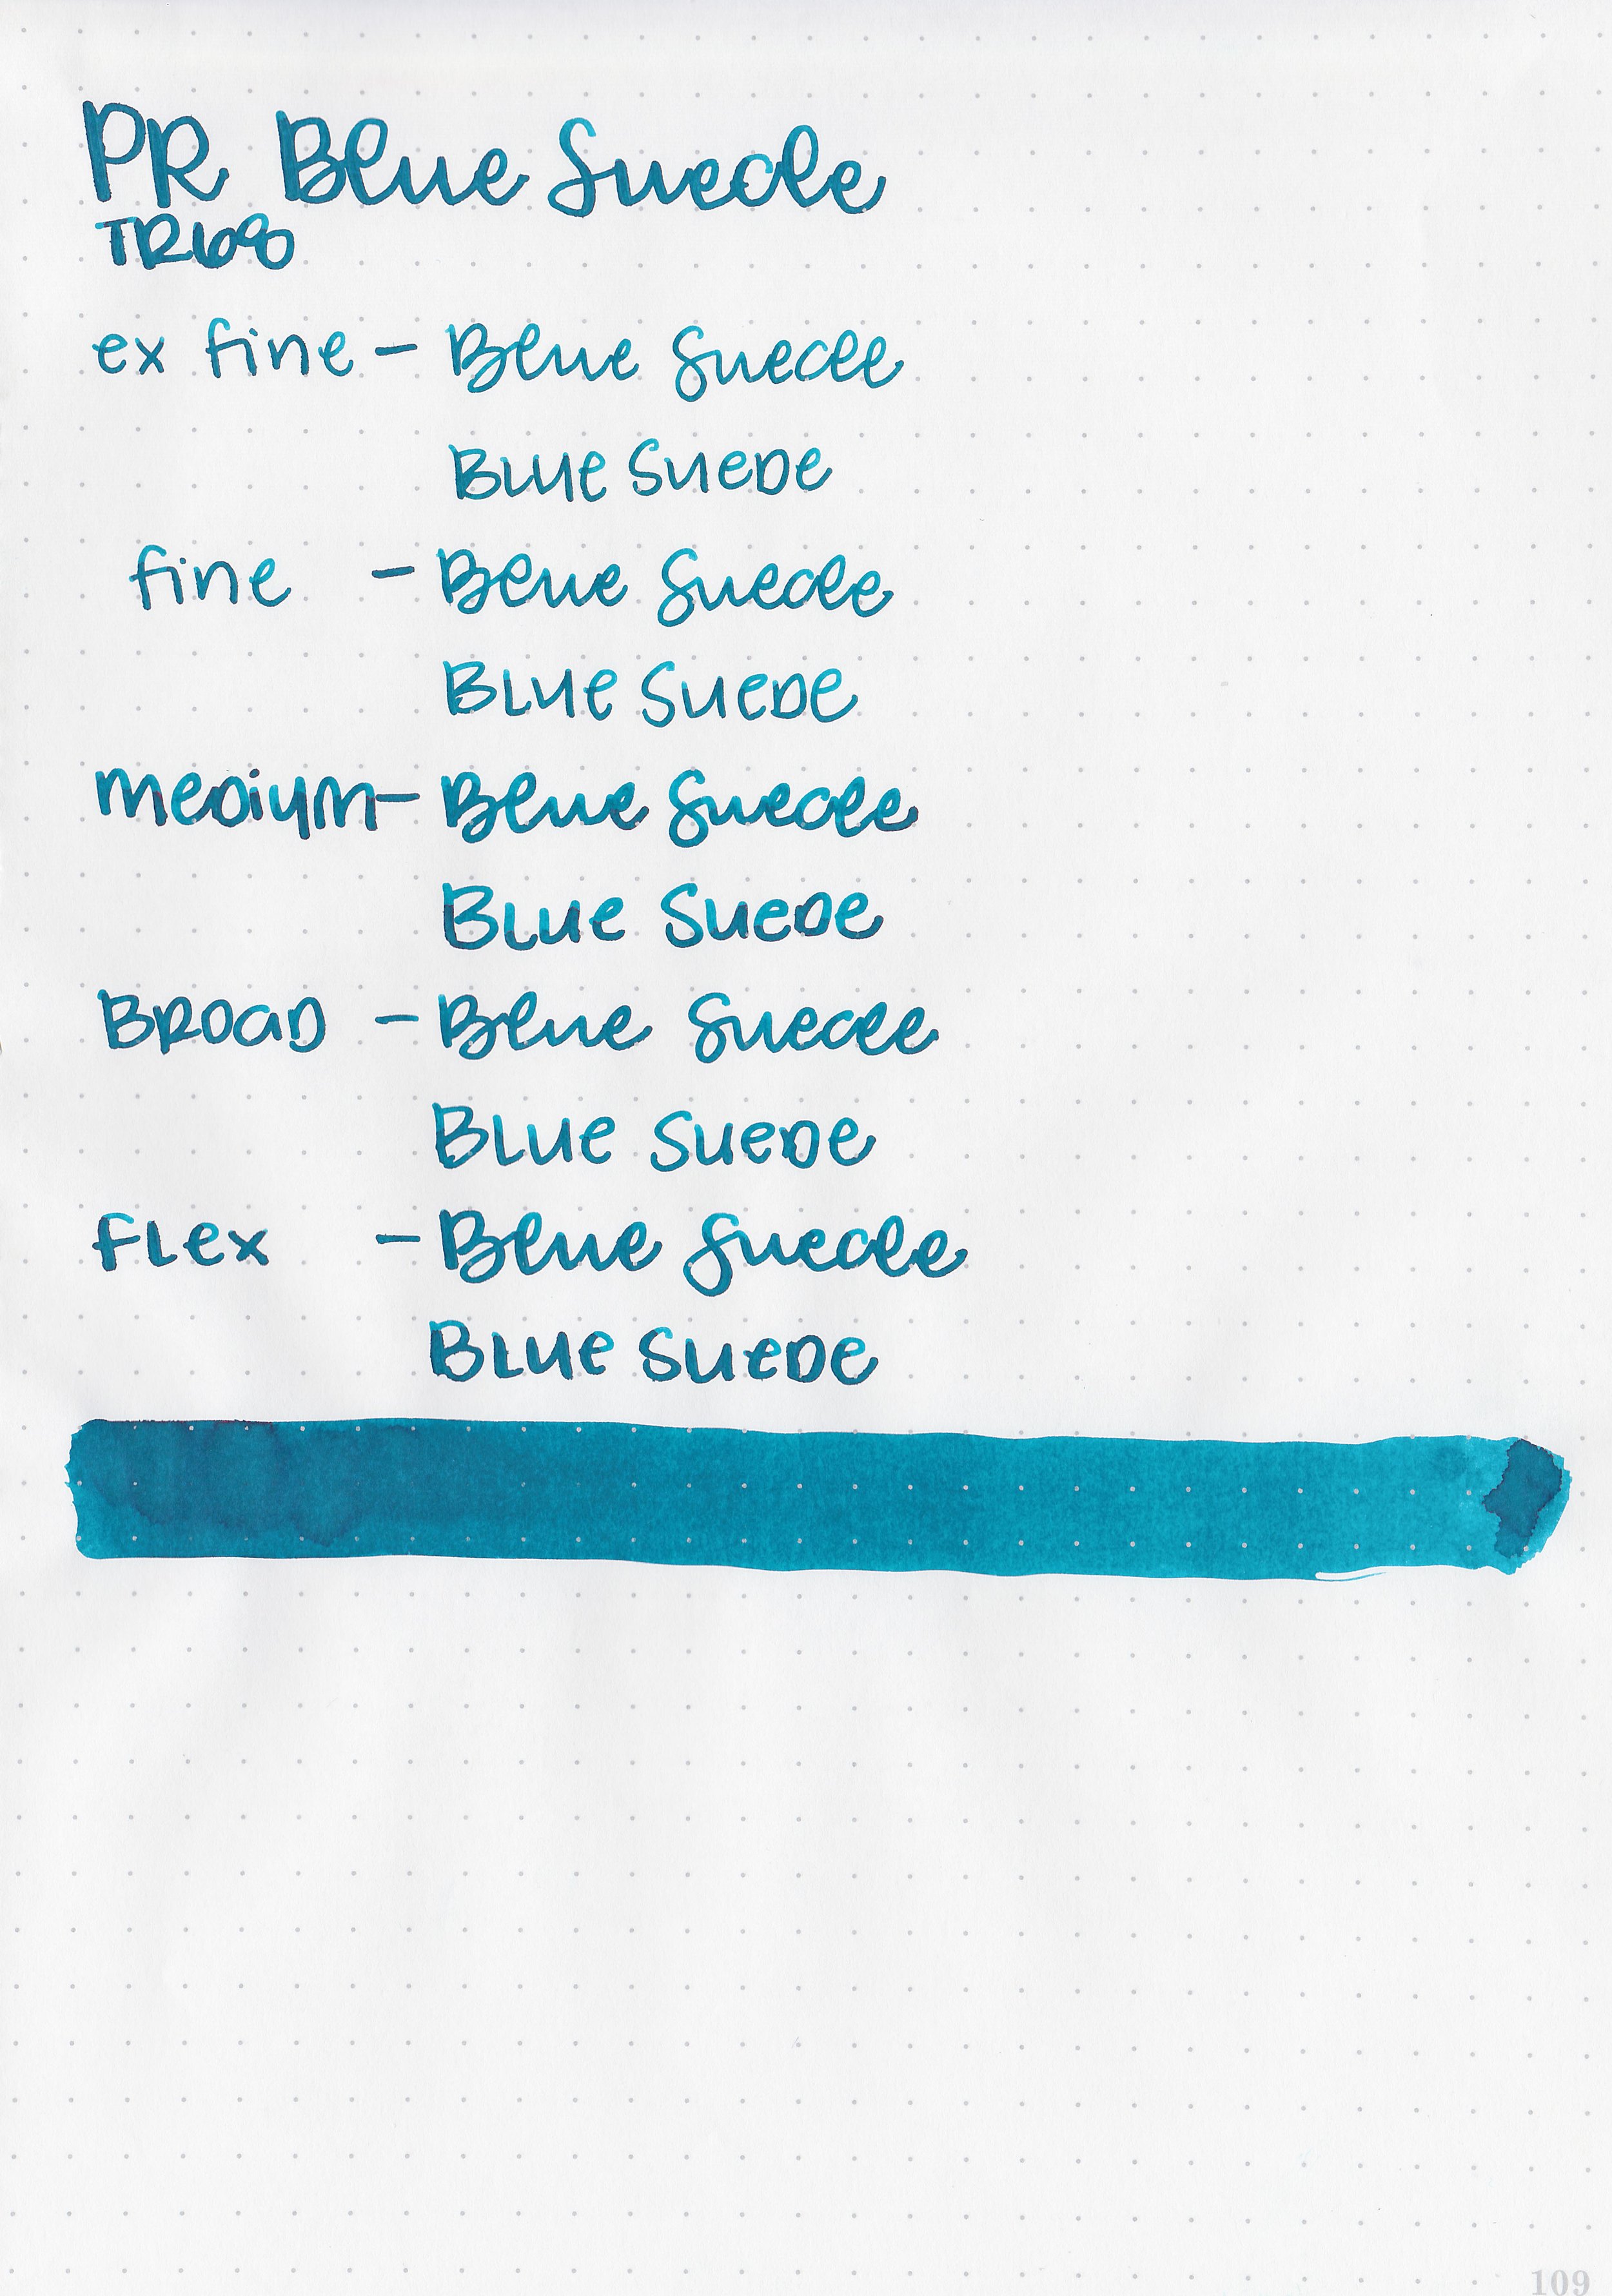 pr-blue-suede-7.jpg